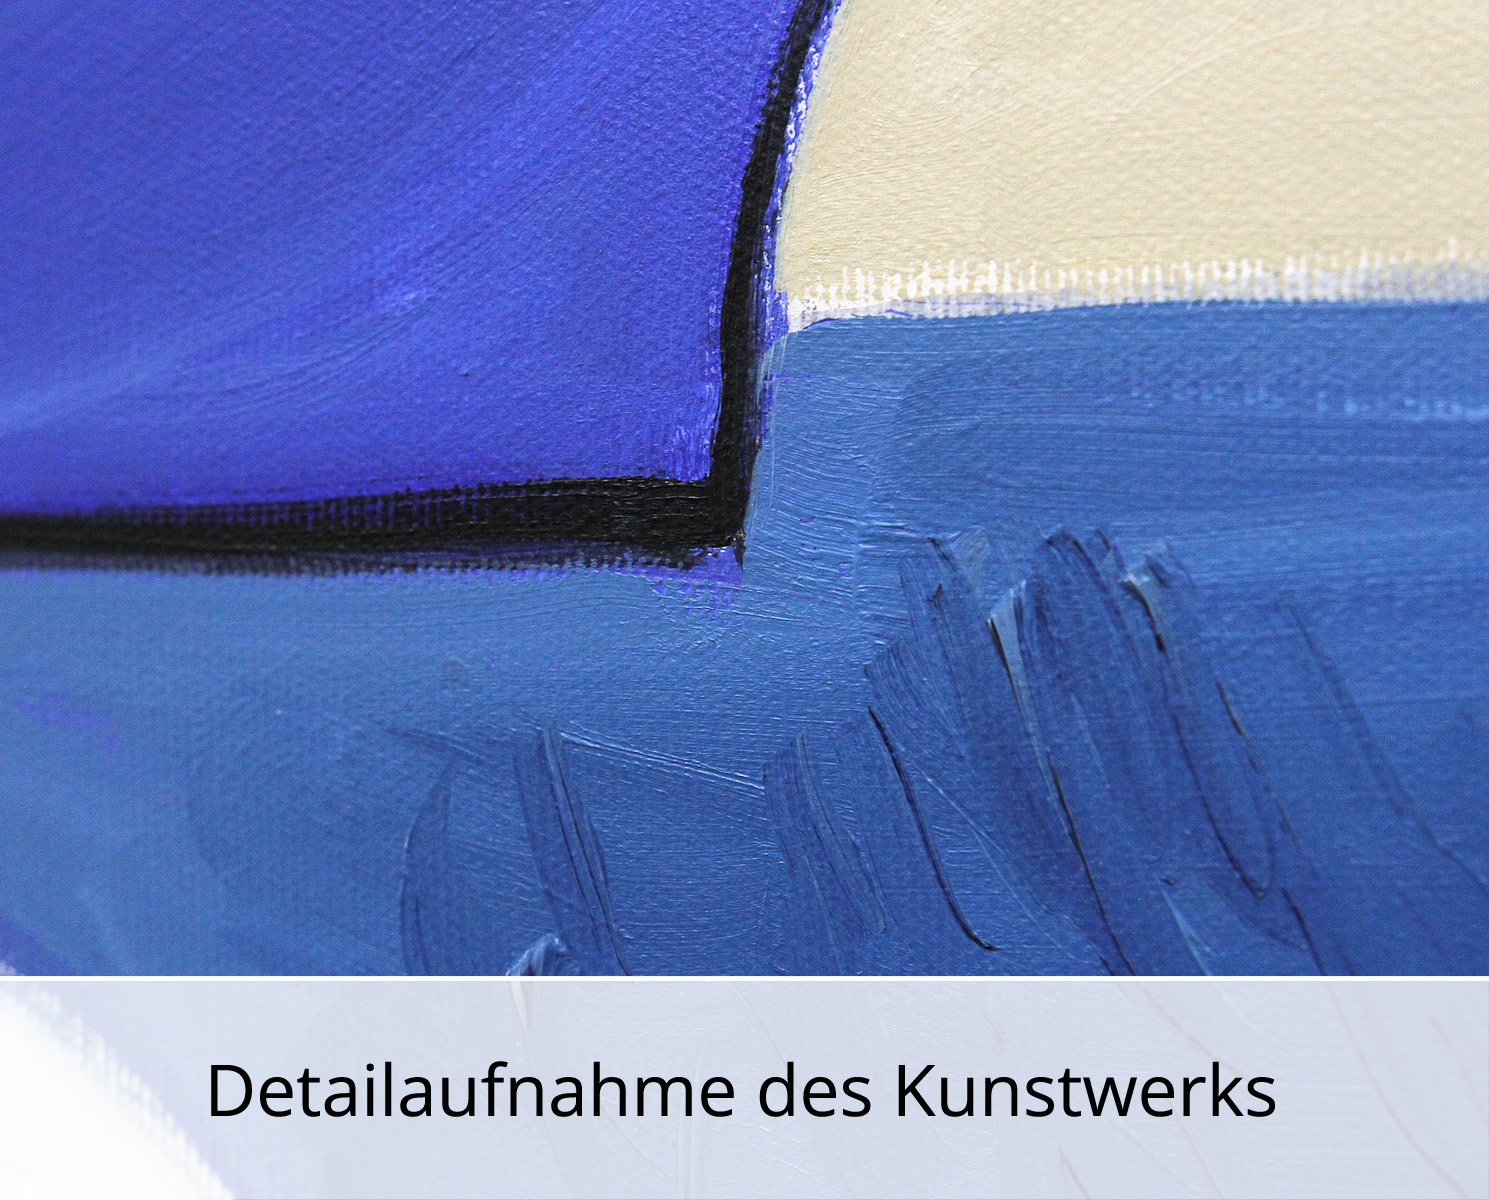 M. Cieśla: "See in abstrakten Formen", Original/Unikat, expressionistisches Gemälde